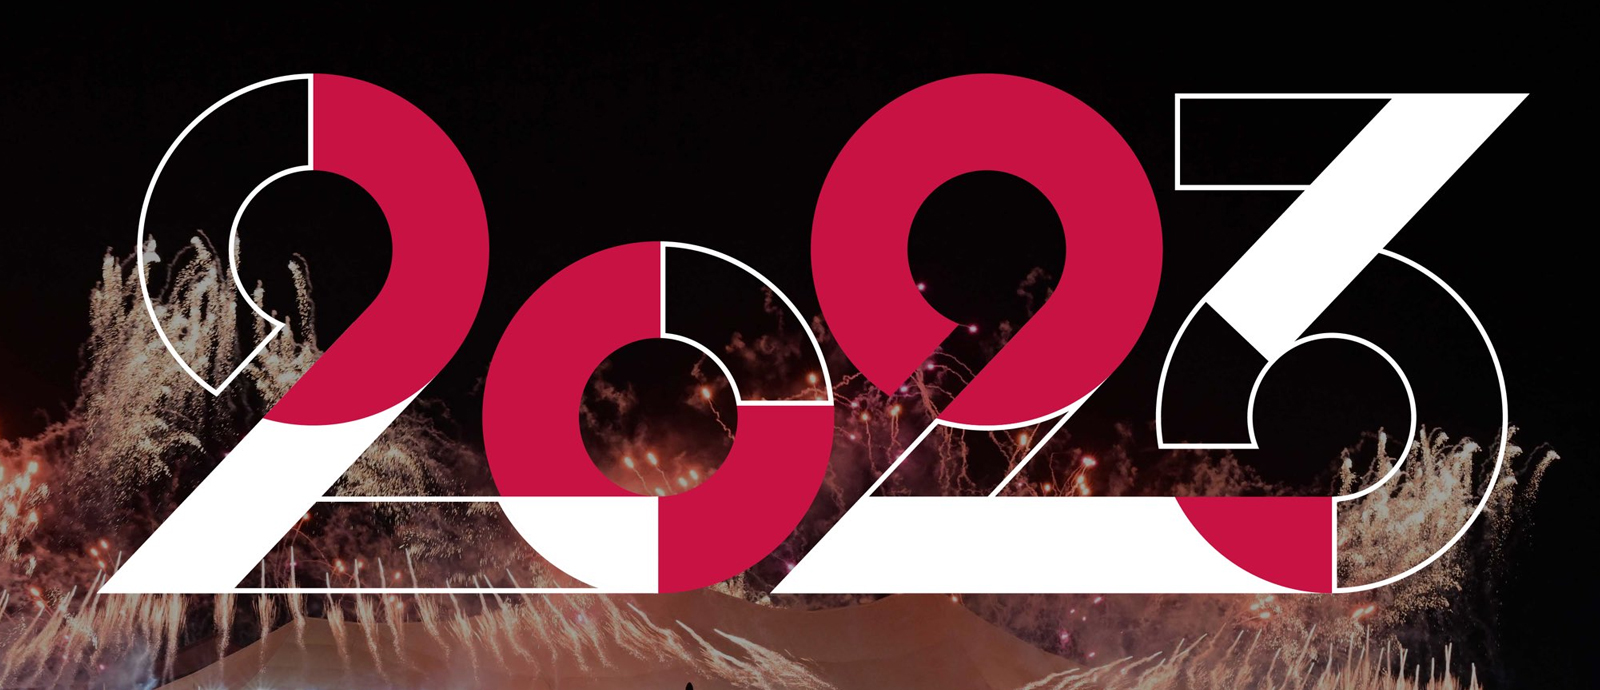 اللجنة الأولمبية القطرية تعلن رزنامة البطولات للعام 2023